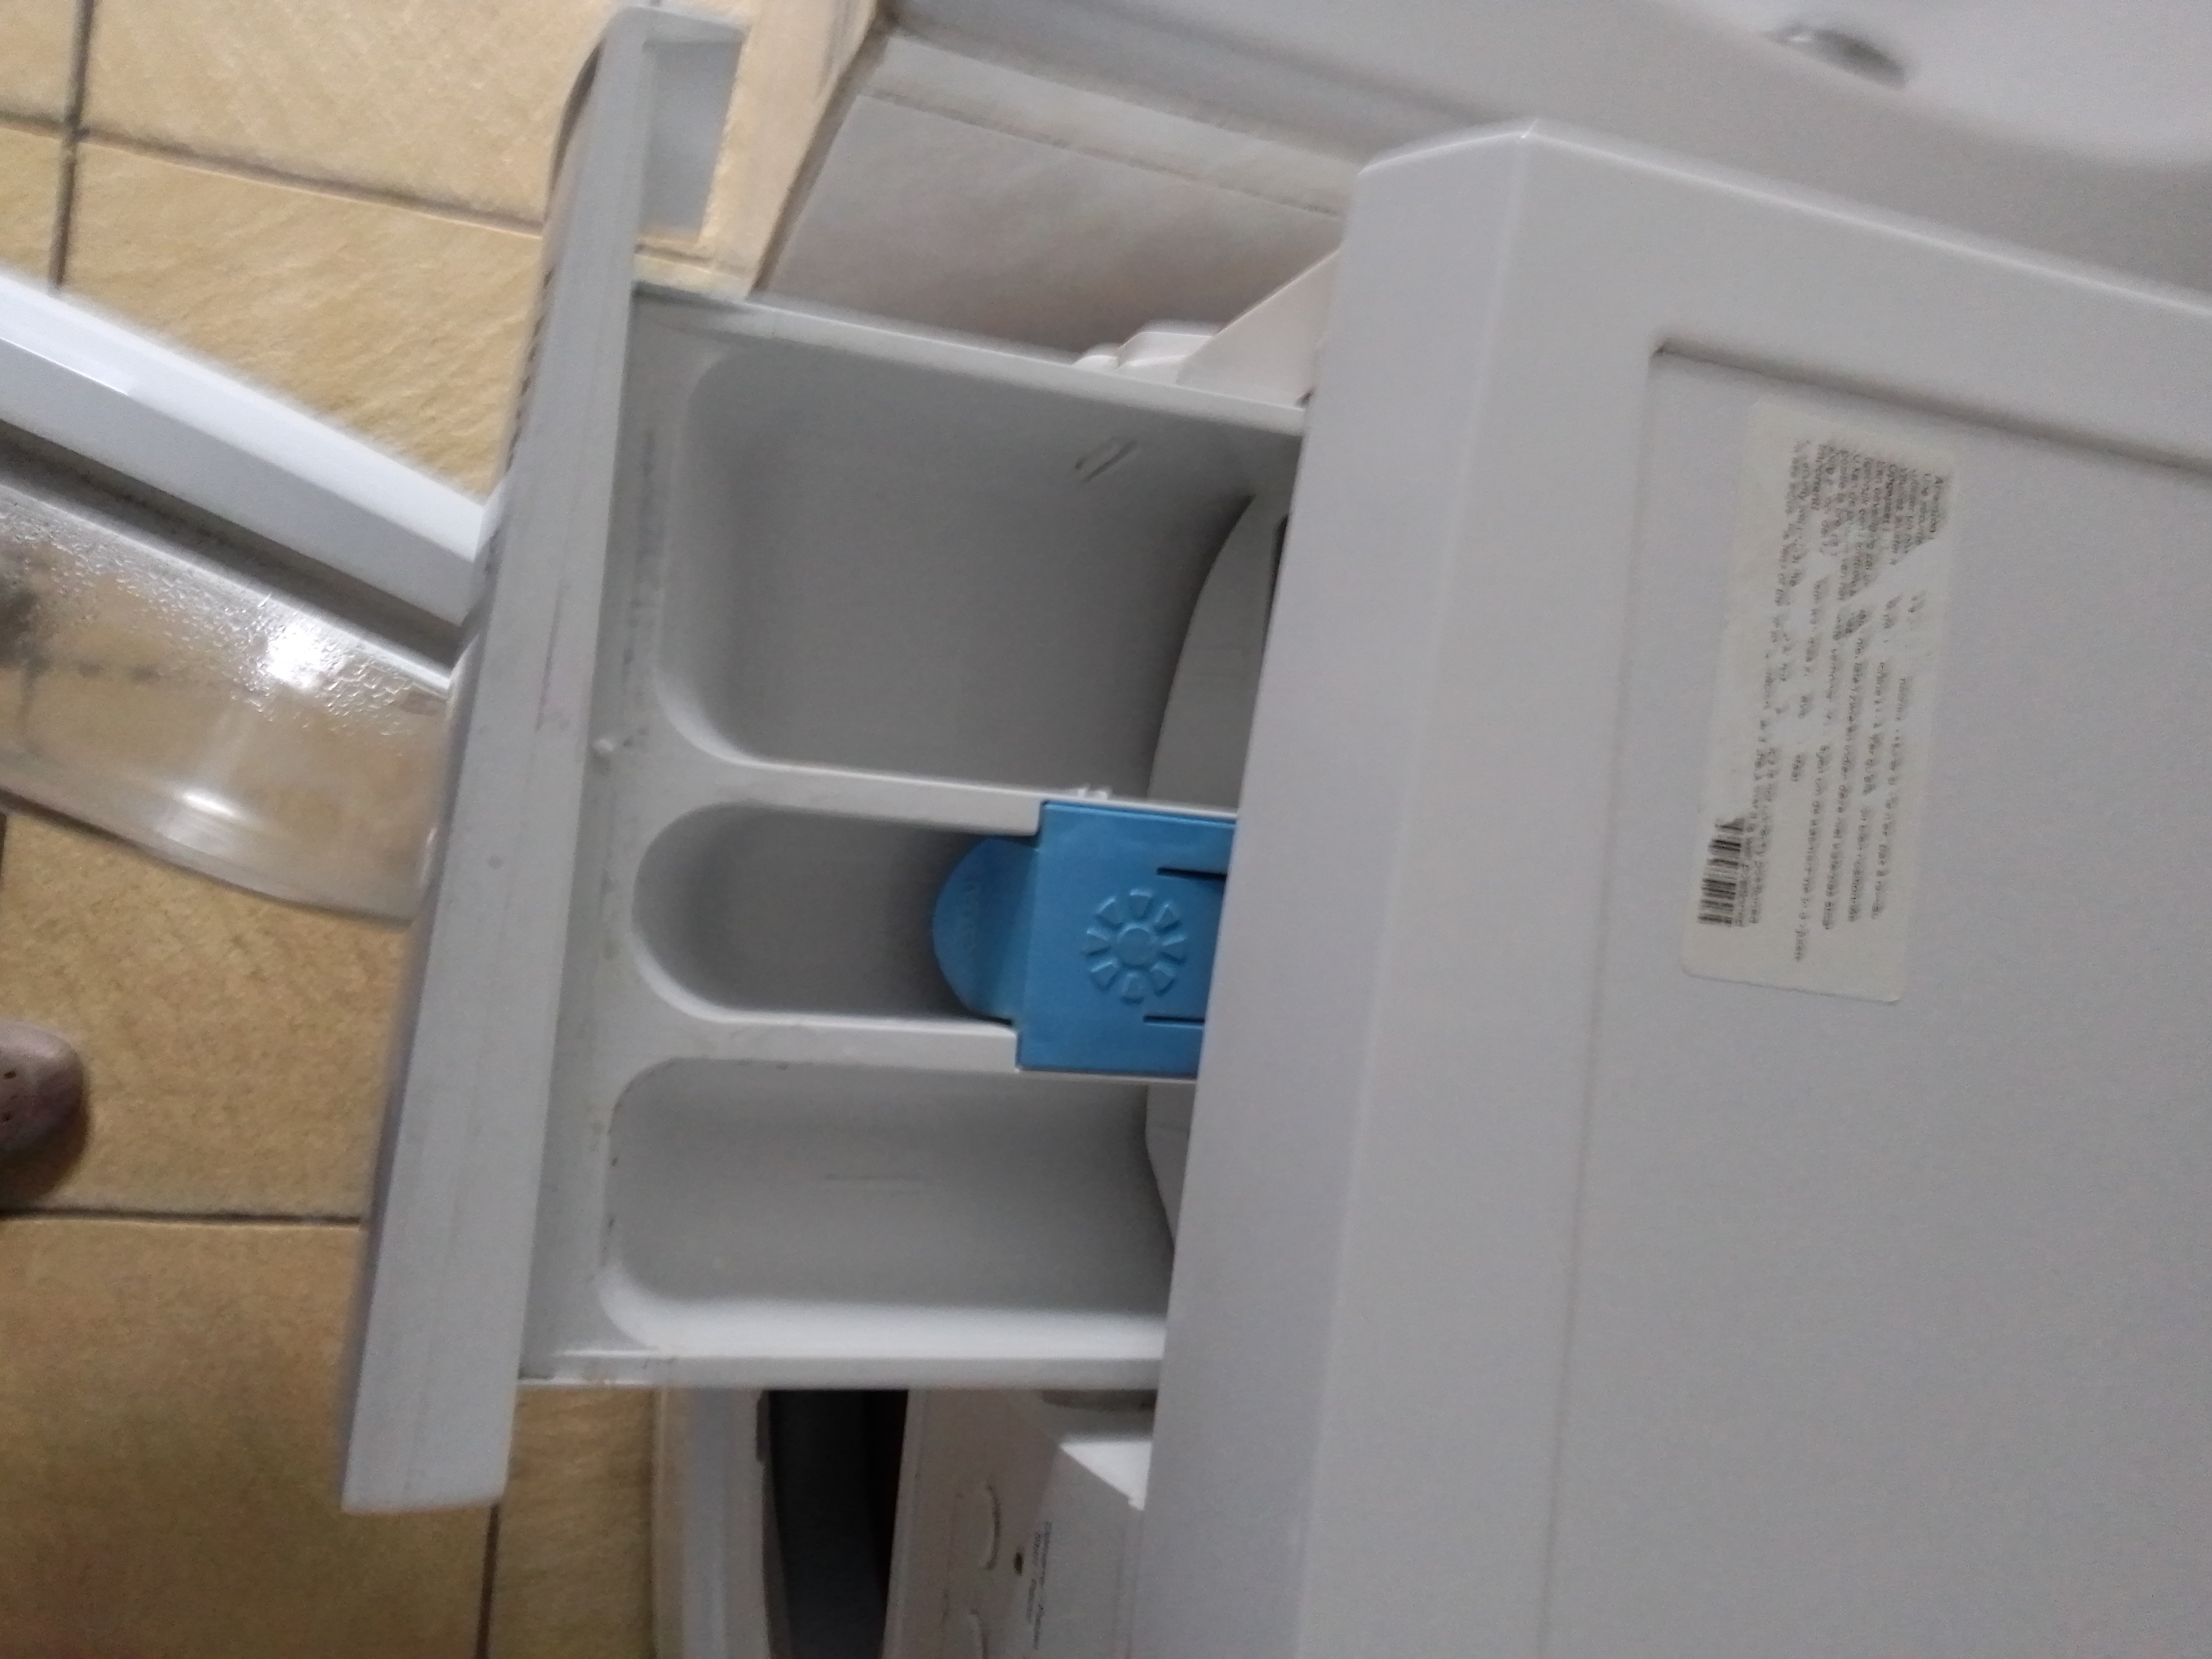 machine à laver (à lessiver) FRIAC A+